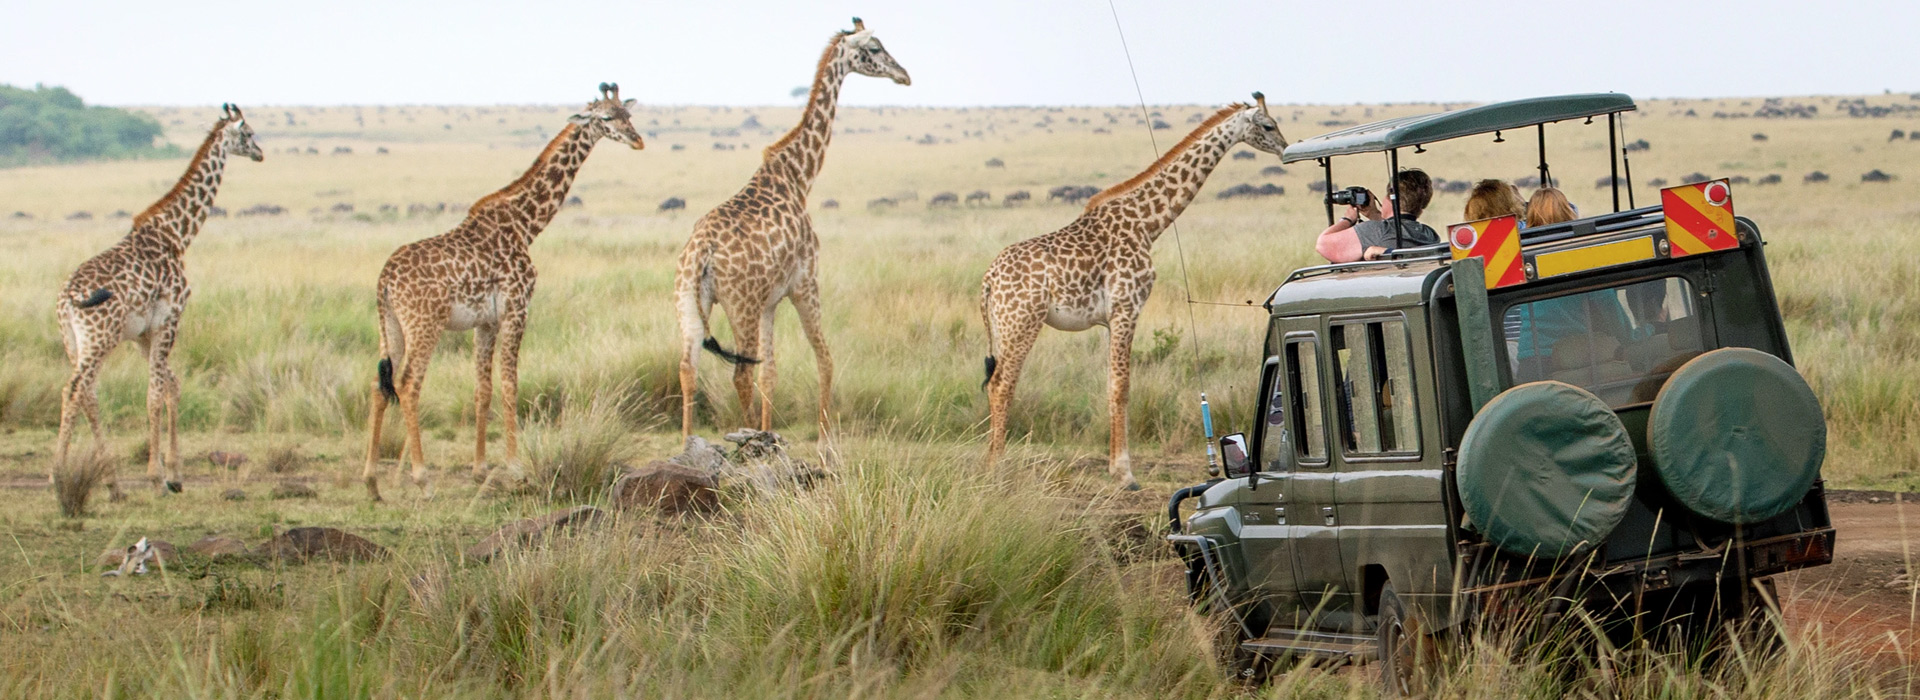 Kenya National Park Conservation Fees 2022 - 2024